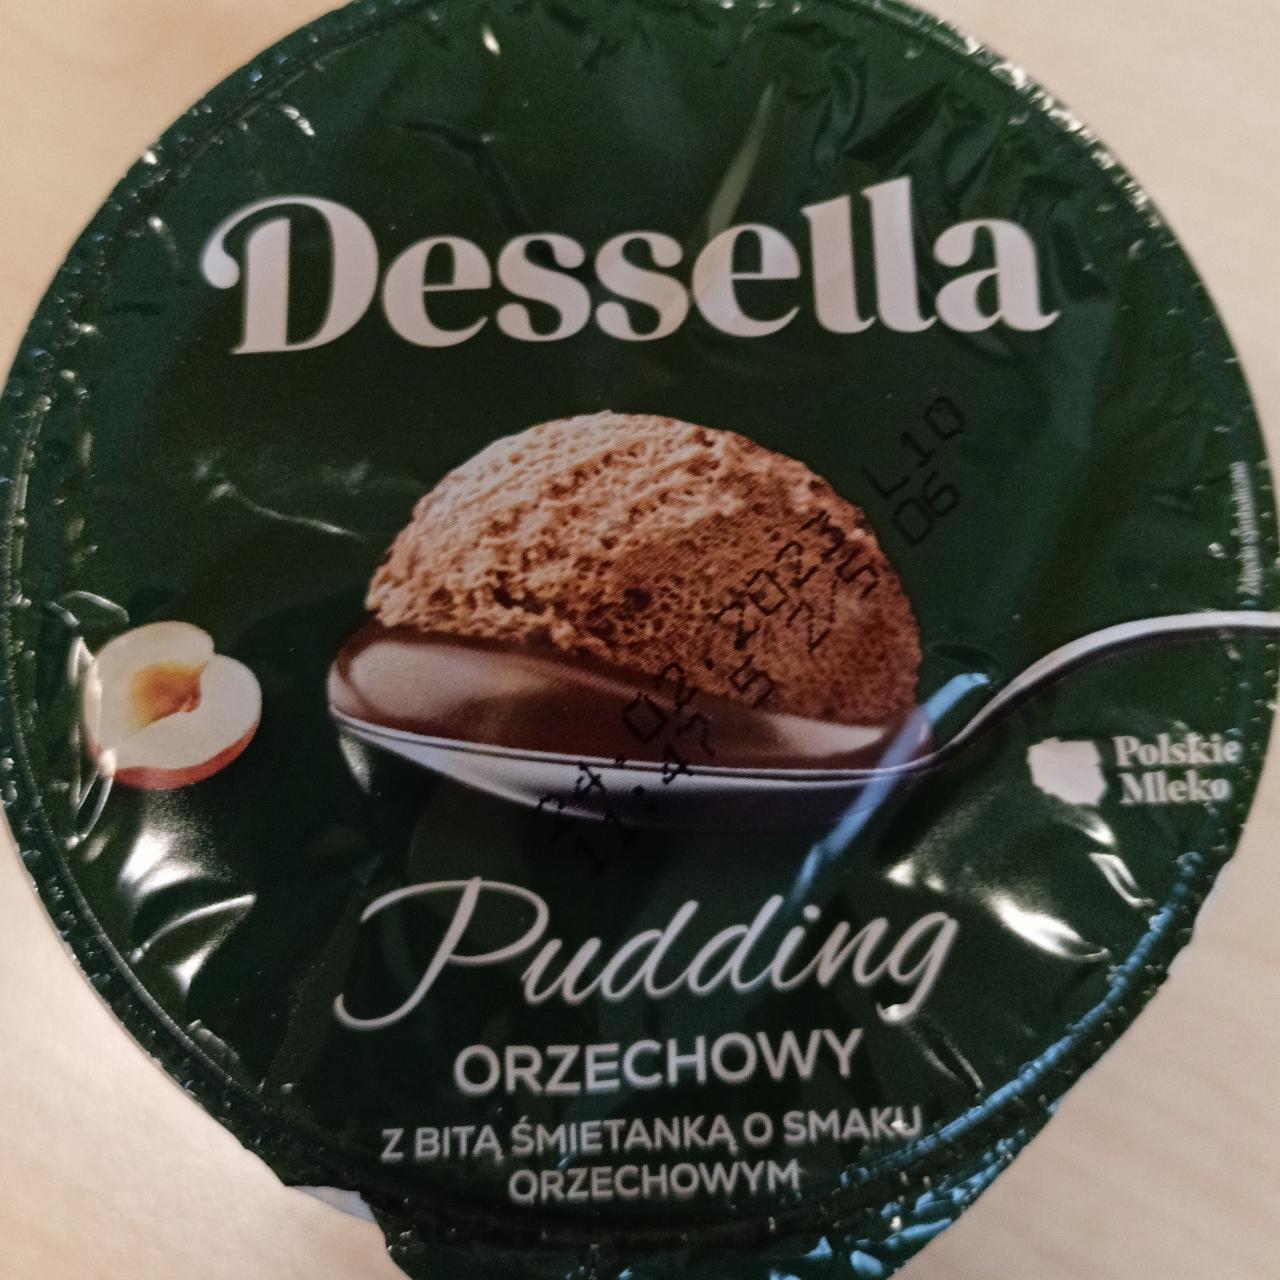 Zdjęcia - Pudding orzechowy z bitą śmietaną Dessella